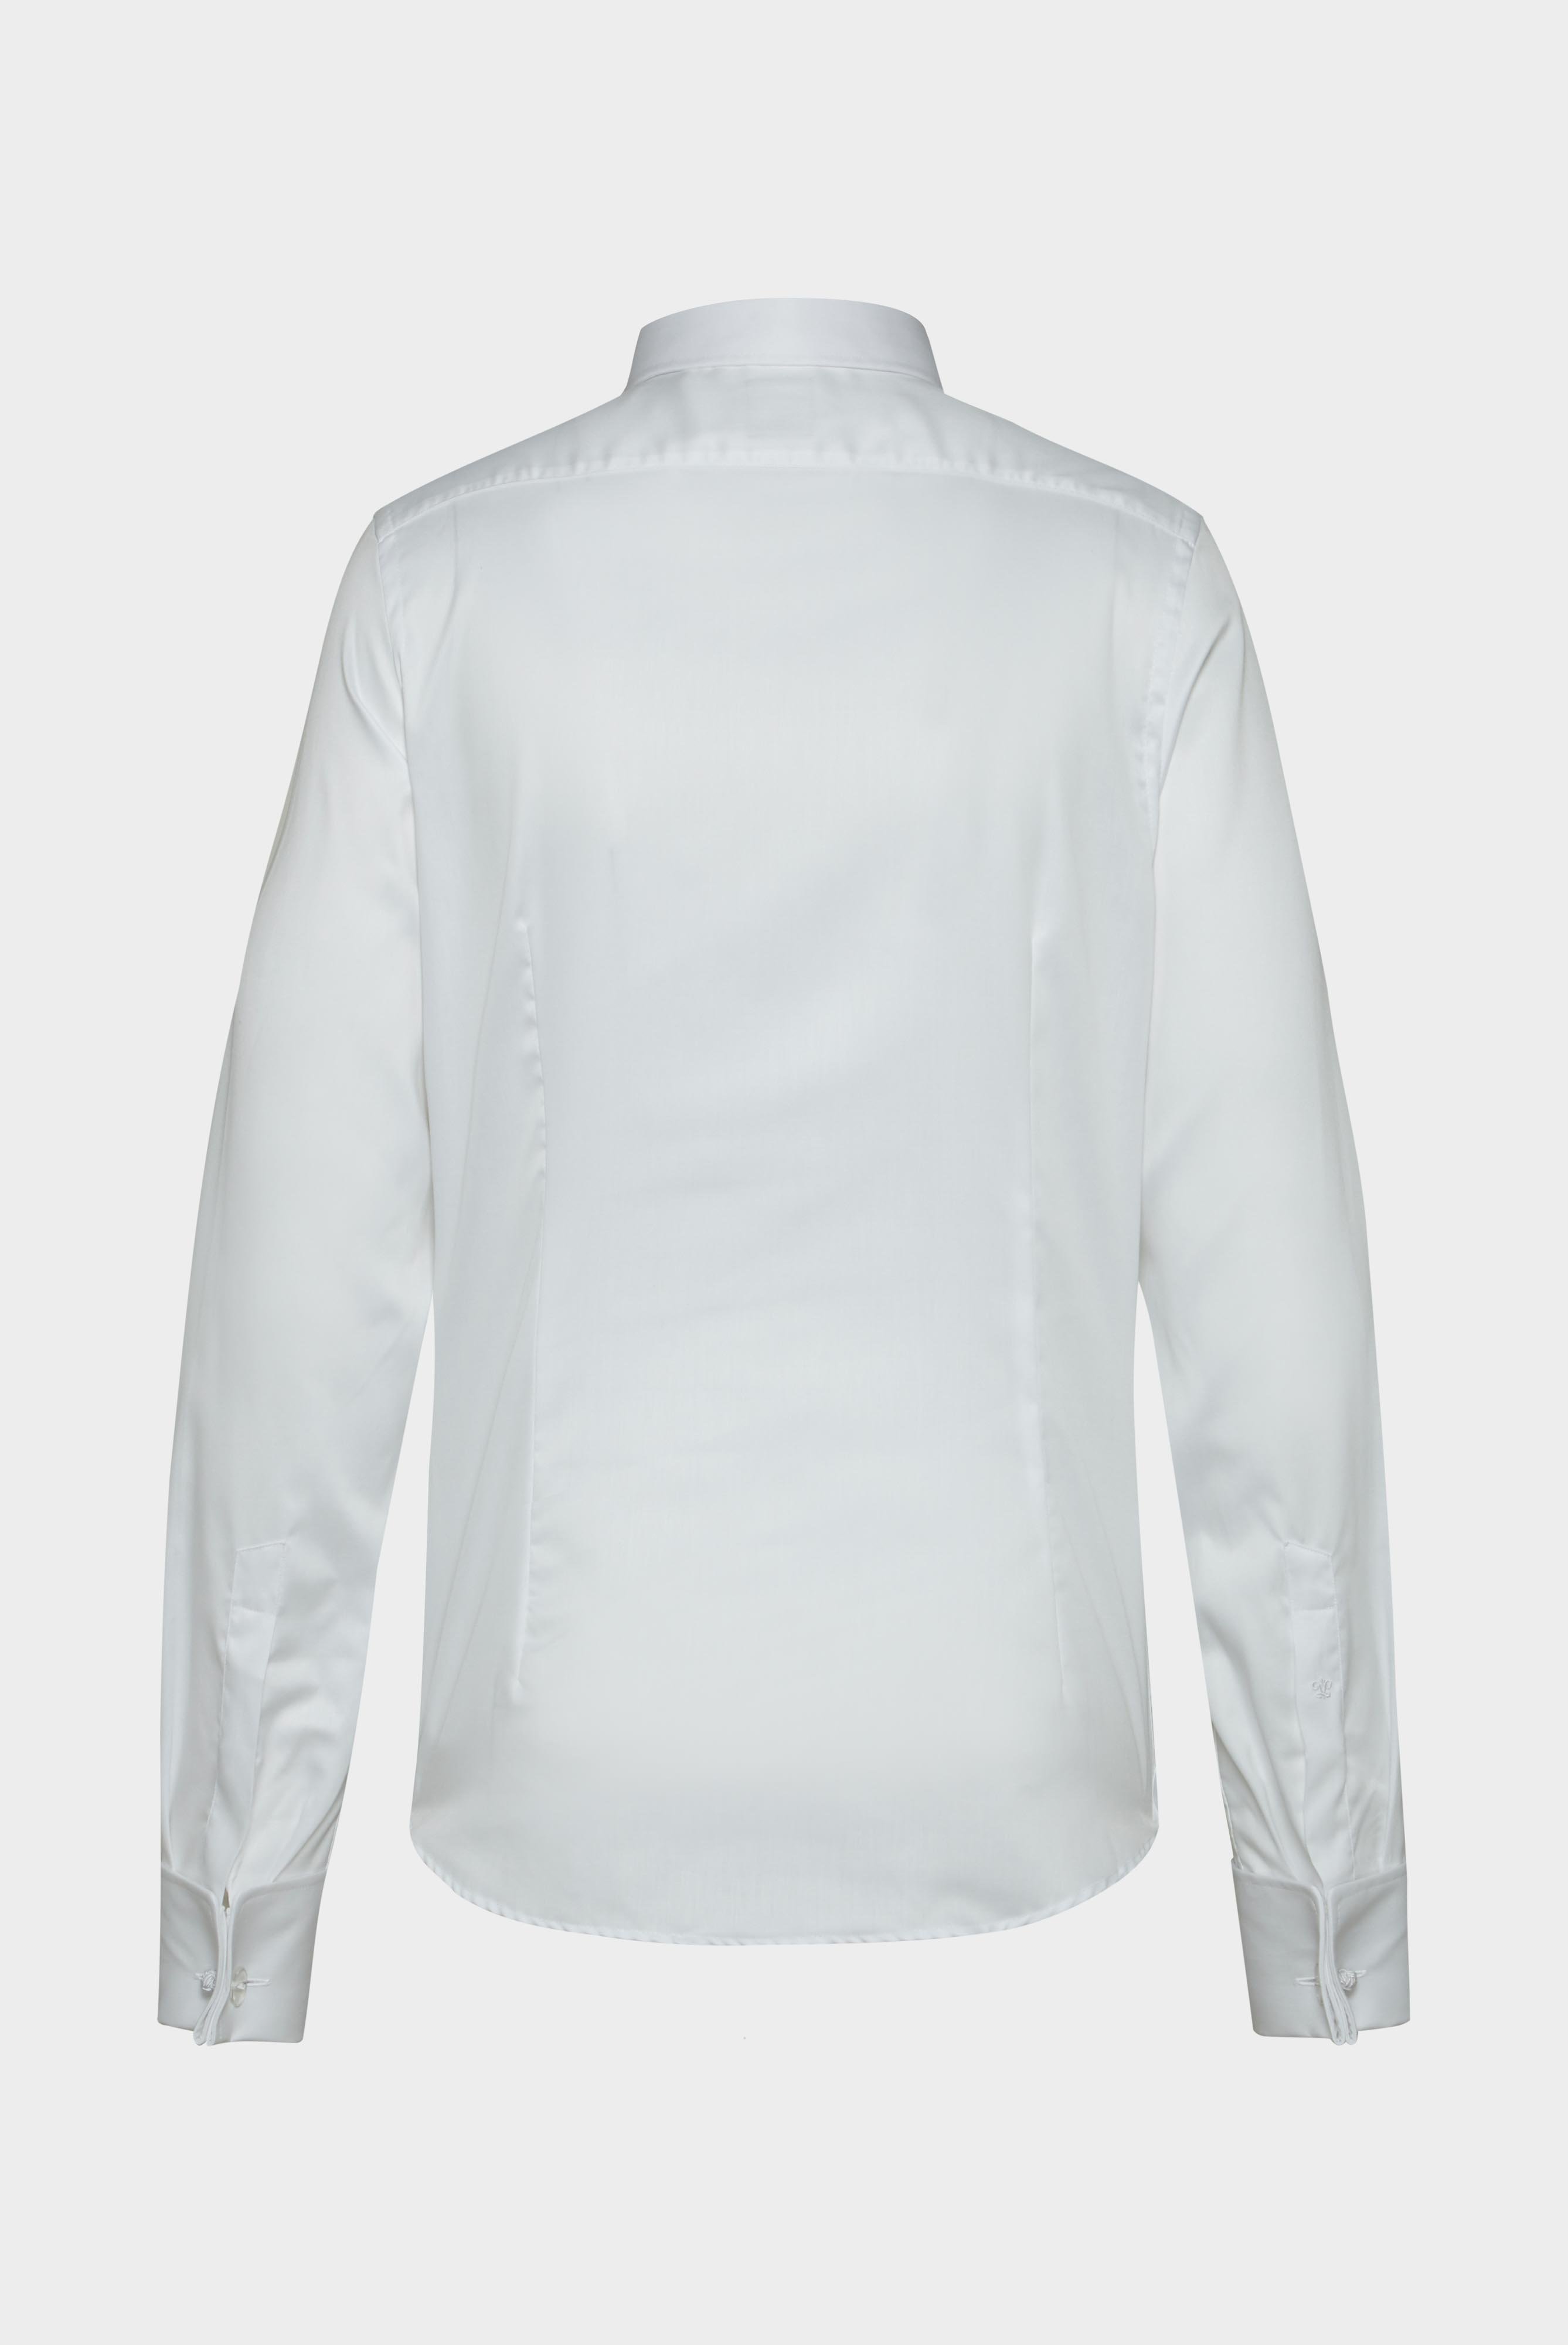 Bügelleichte Hemden+Bügelfreies Twill Hemd Slim Fit+20.2047.BQ.132241.000.37